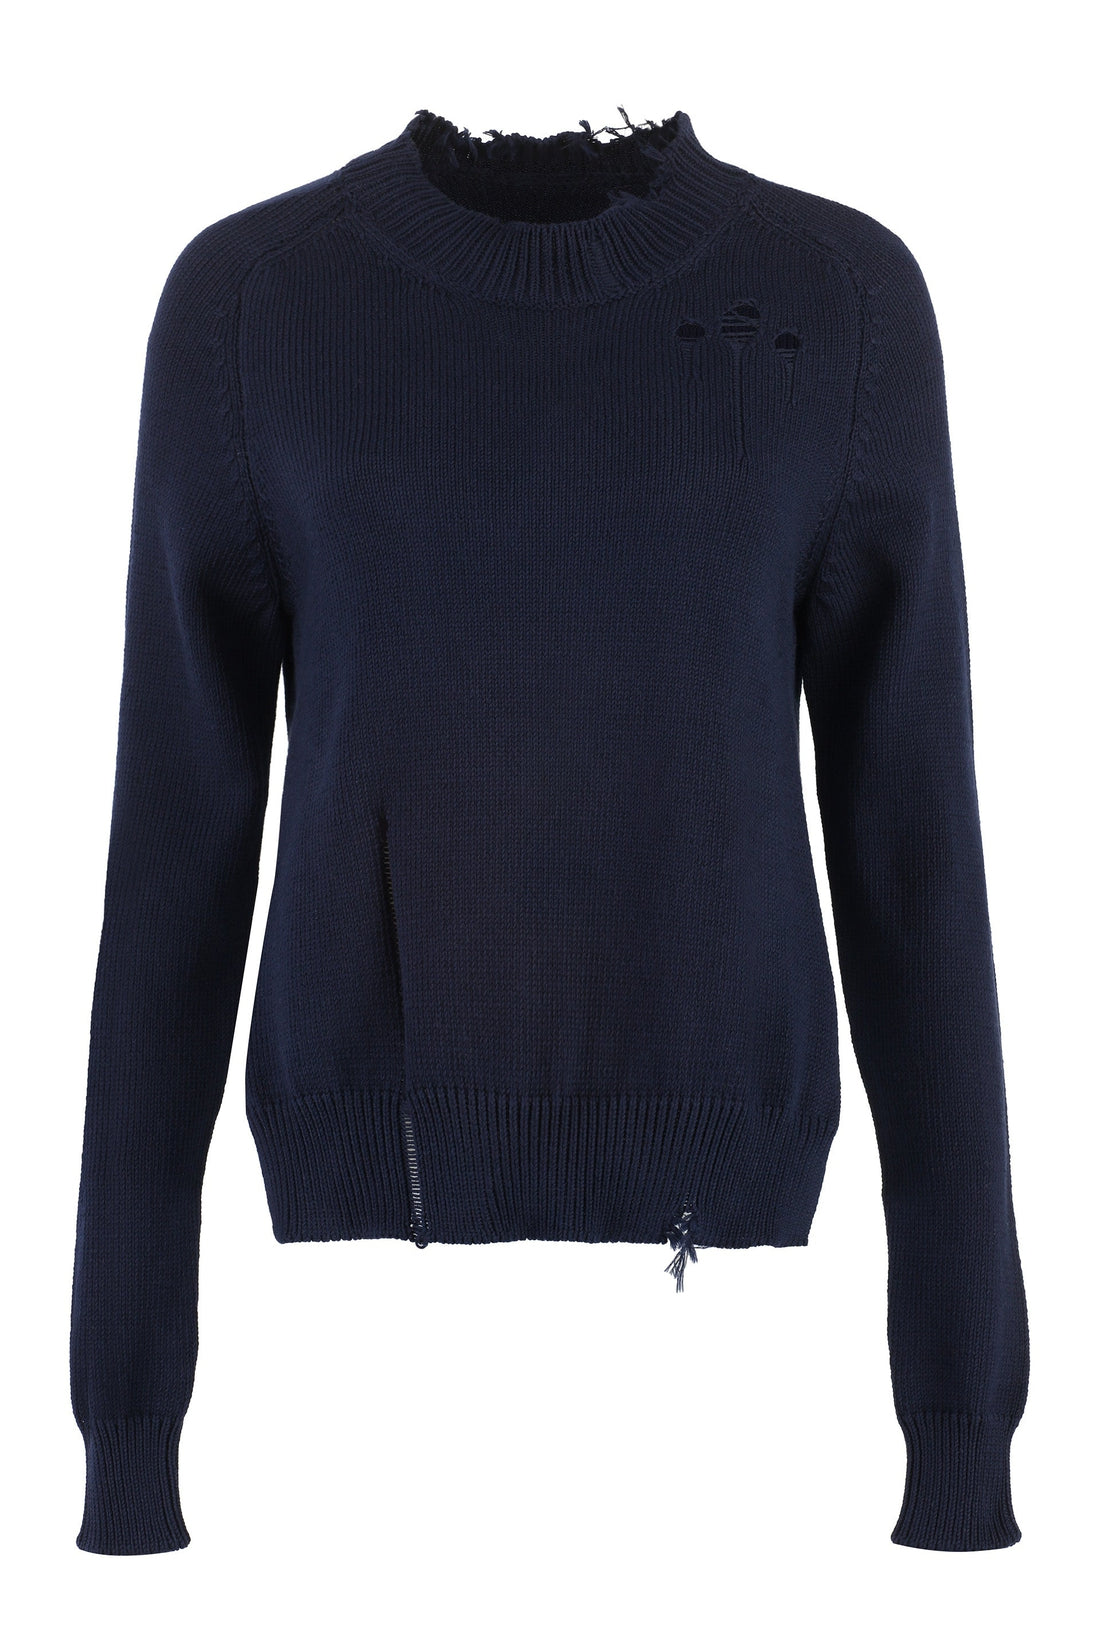 Maison Margiela-OUTLET-SALE-Cotton crew-neck sweater-ARCHIVIST